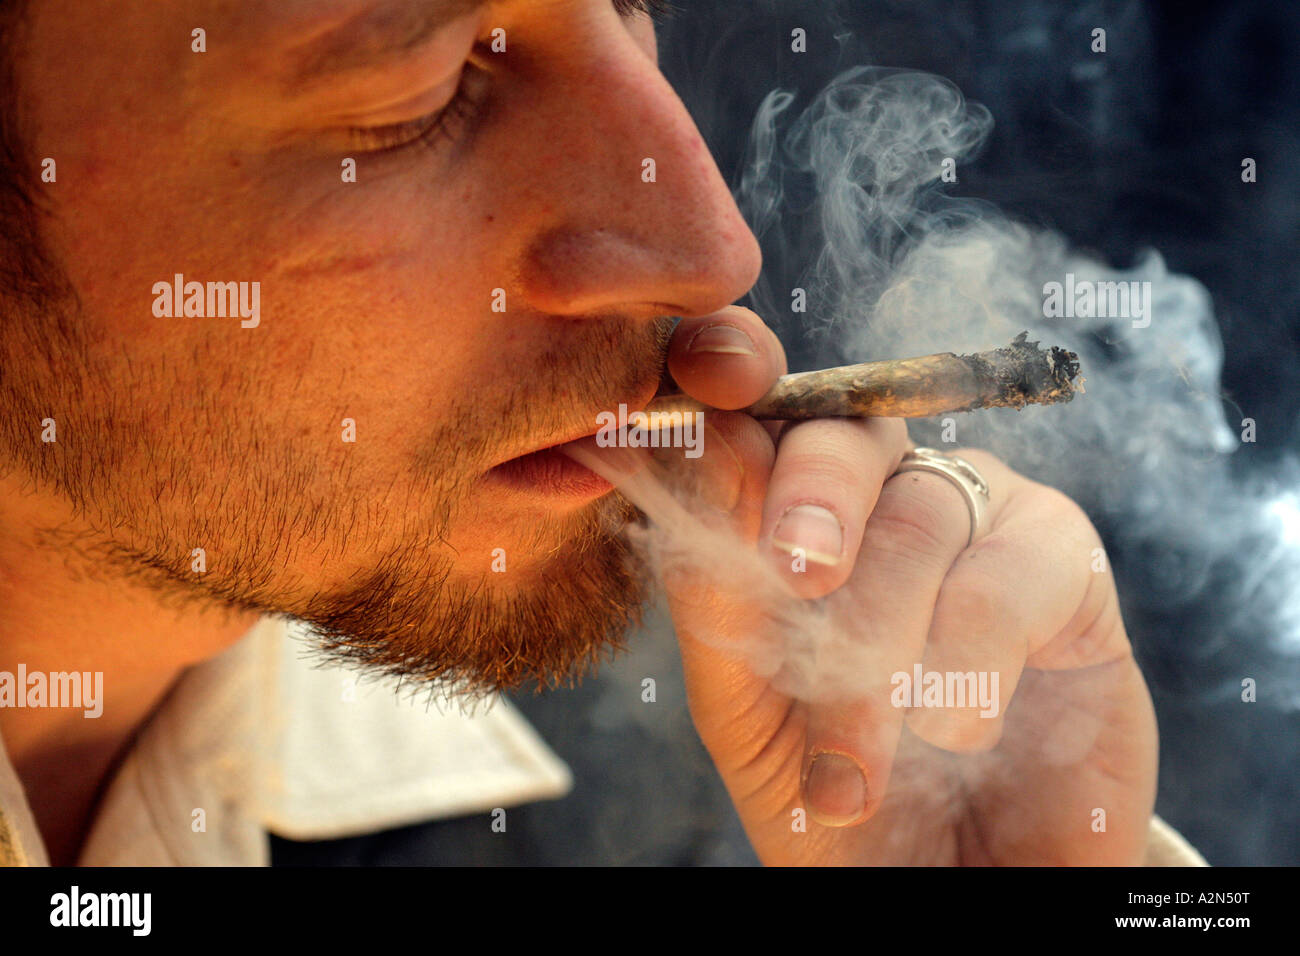 Close-up of young man smoking marijuana Stock Photo